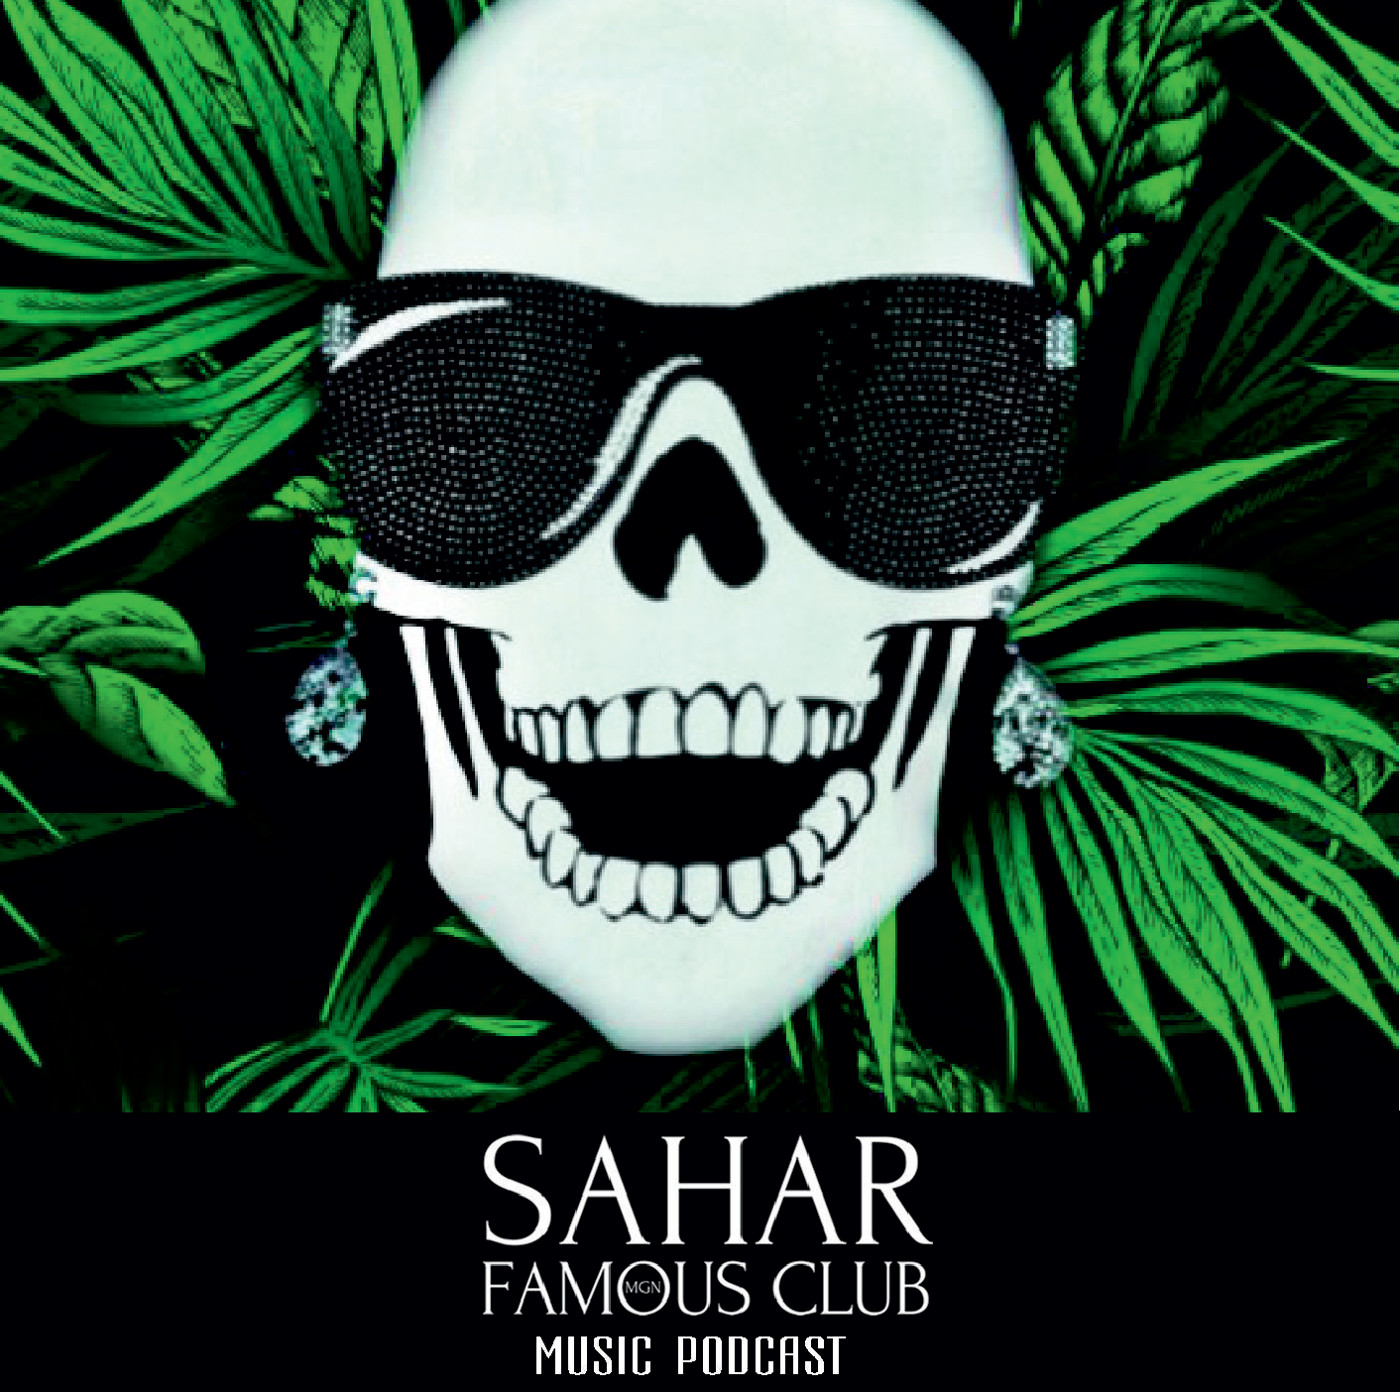 SAHAR FAMOUS CLUB